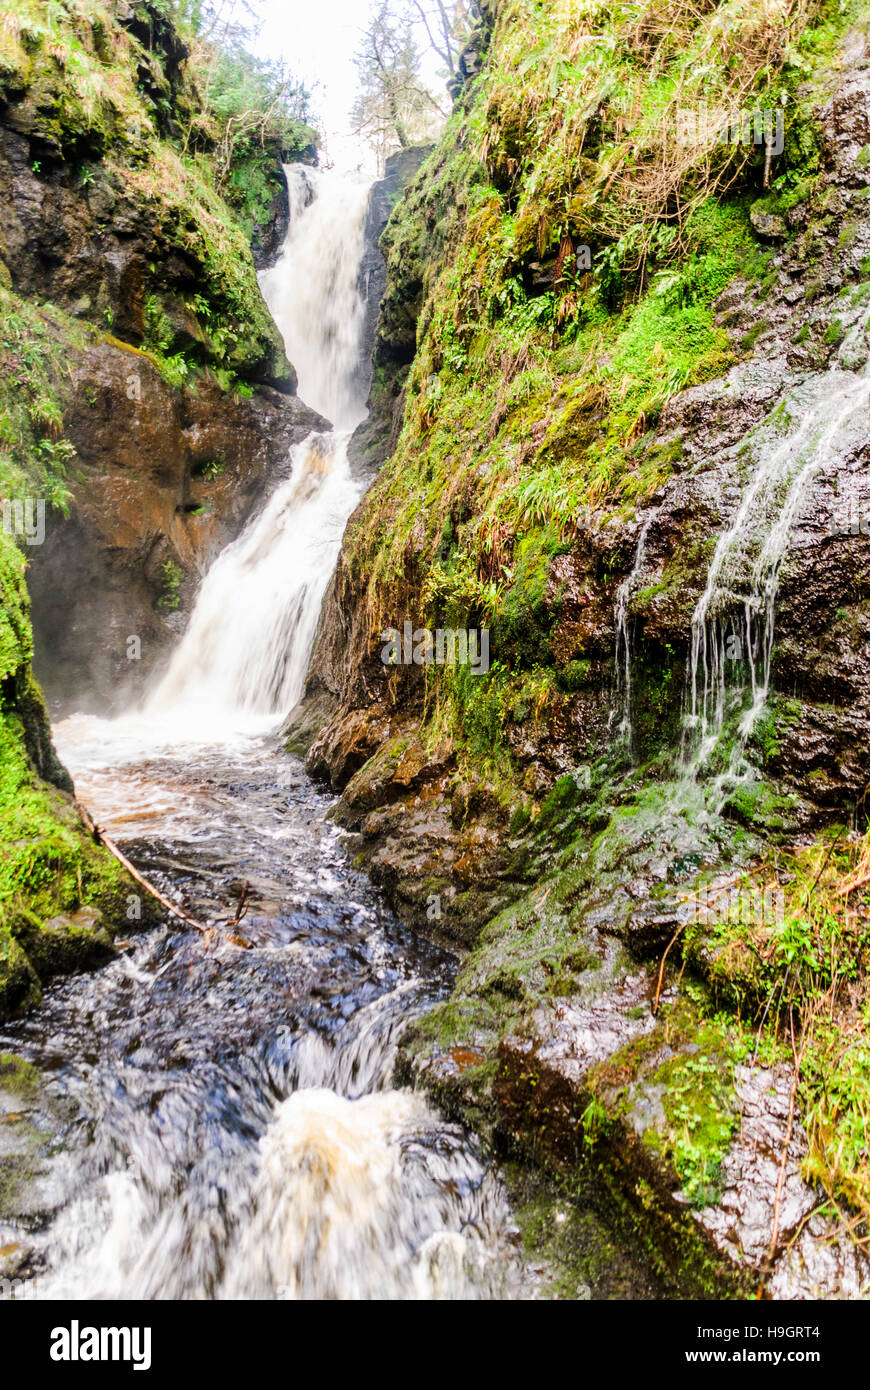 Cascades de Glenariff Forest Park, l'un des sept Les Glens d'Antrim, comté d'Antrim, en Irlande du Nord Banque D'Images